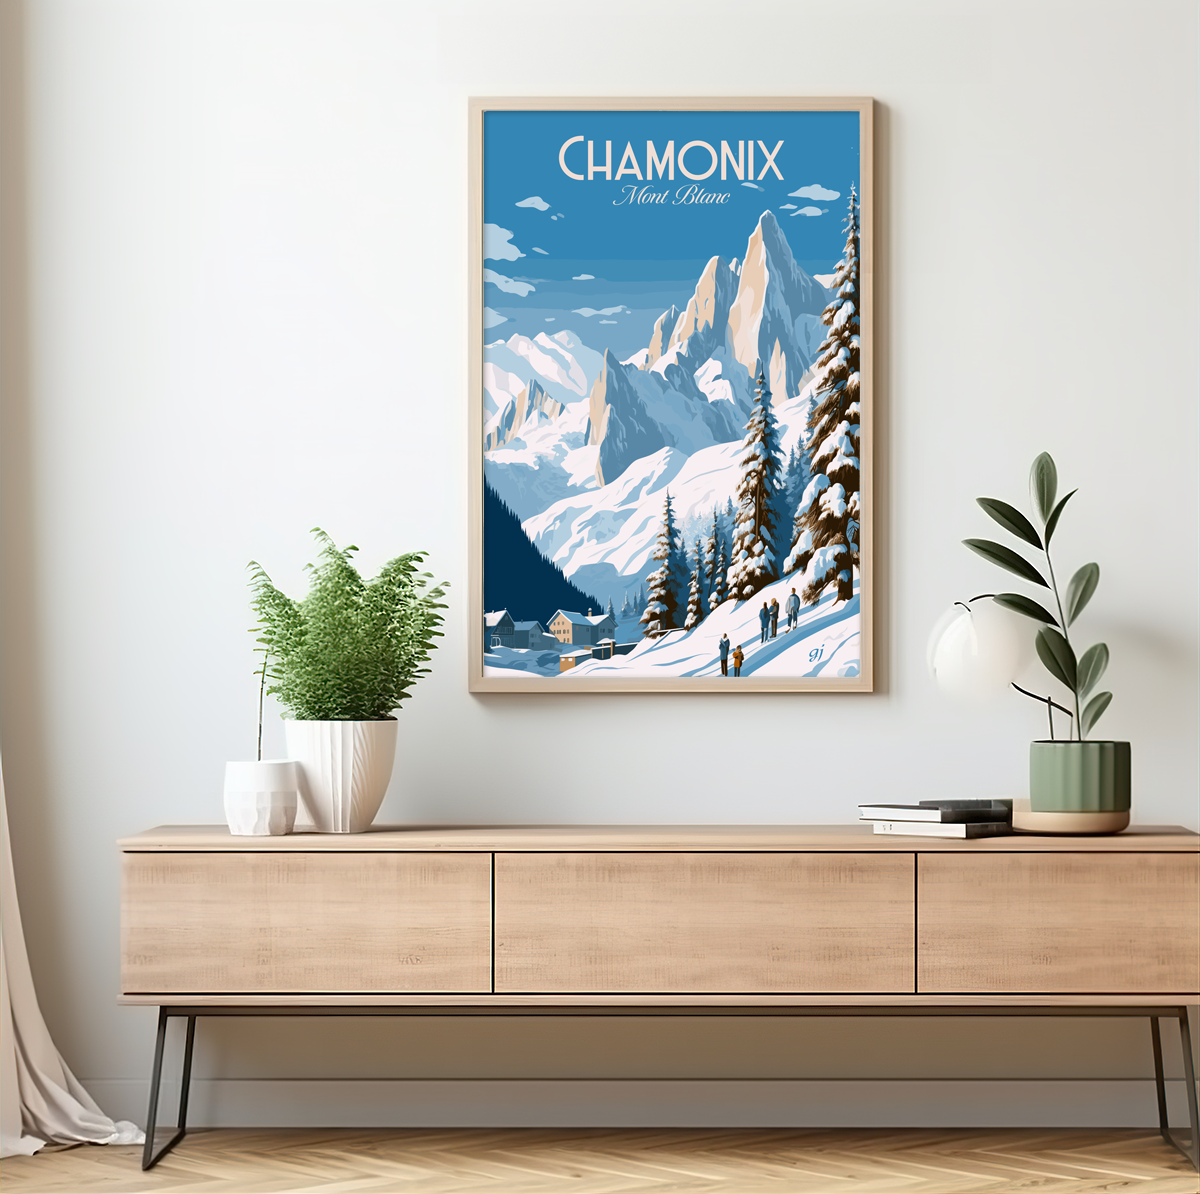 Chamonix poster by bon voyage design